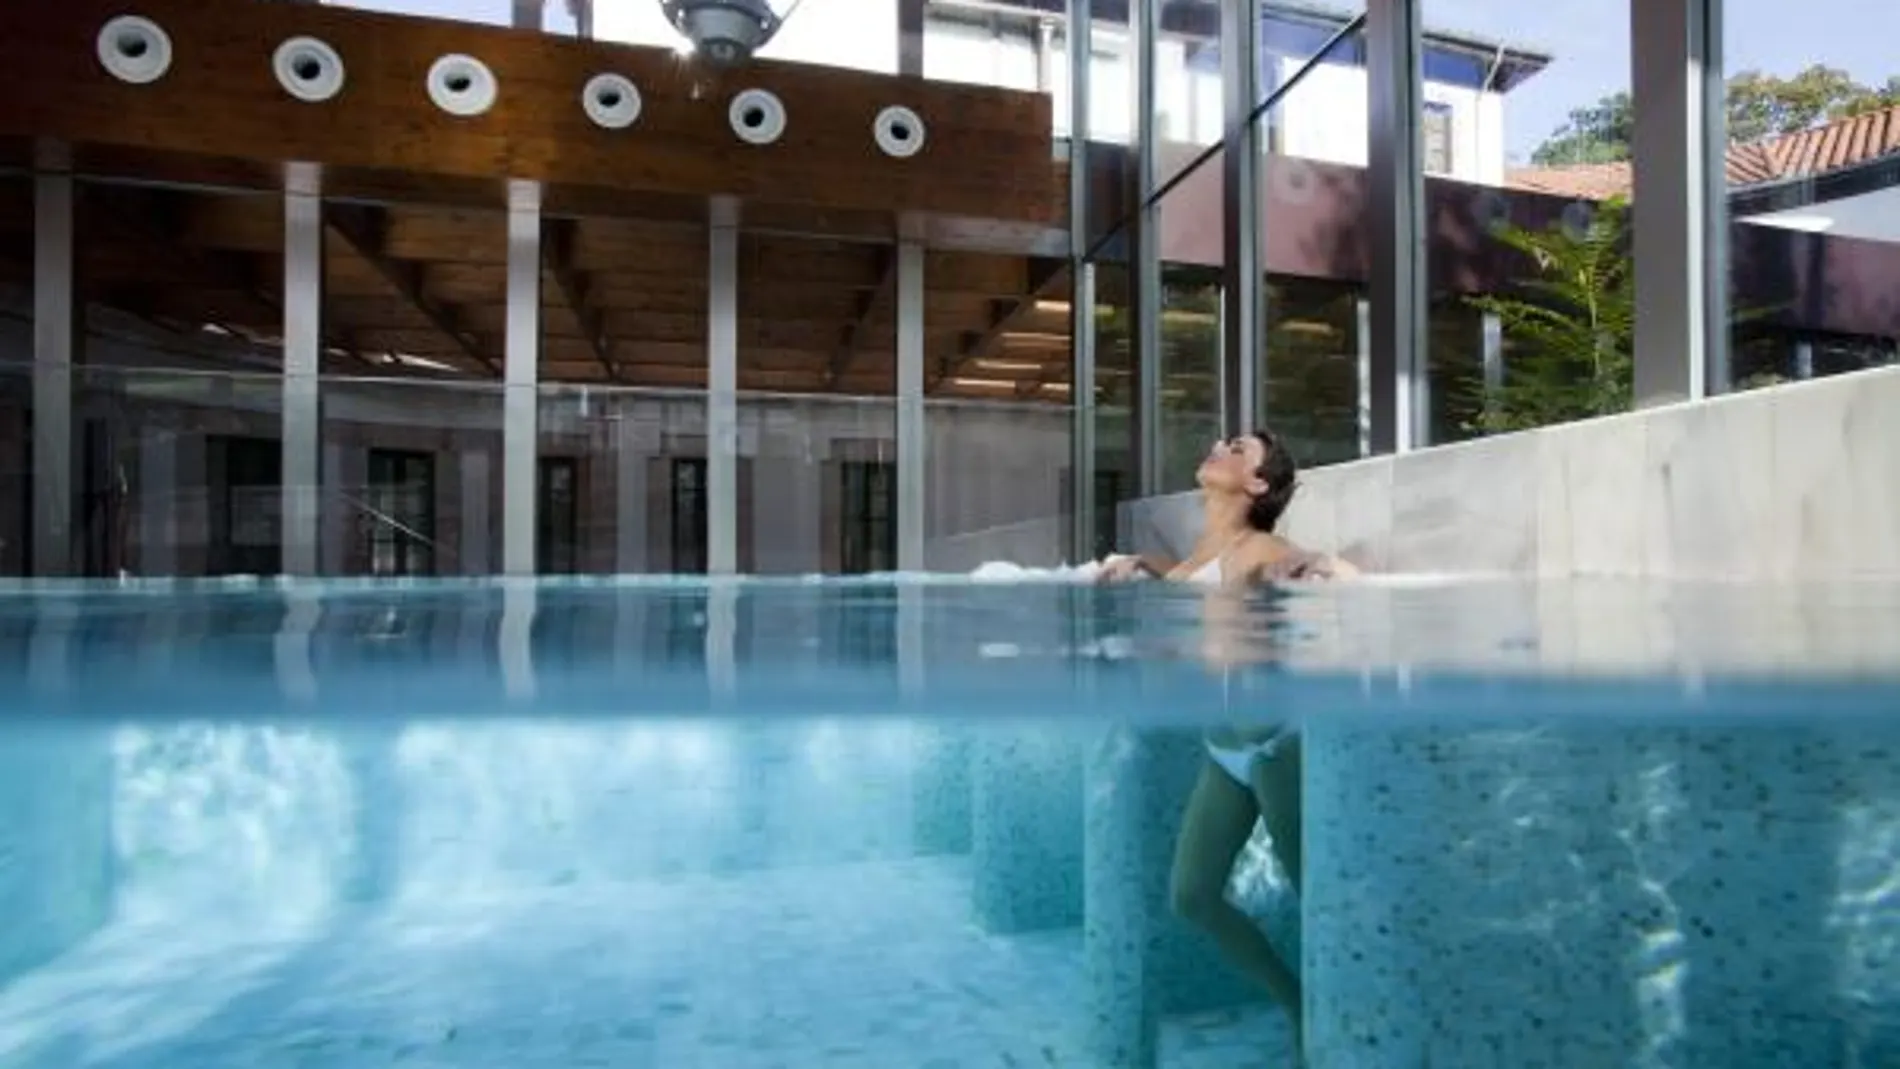 Bajo una construcción moderna, la planta superior del hotel alberga una piscina dinámica